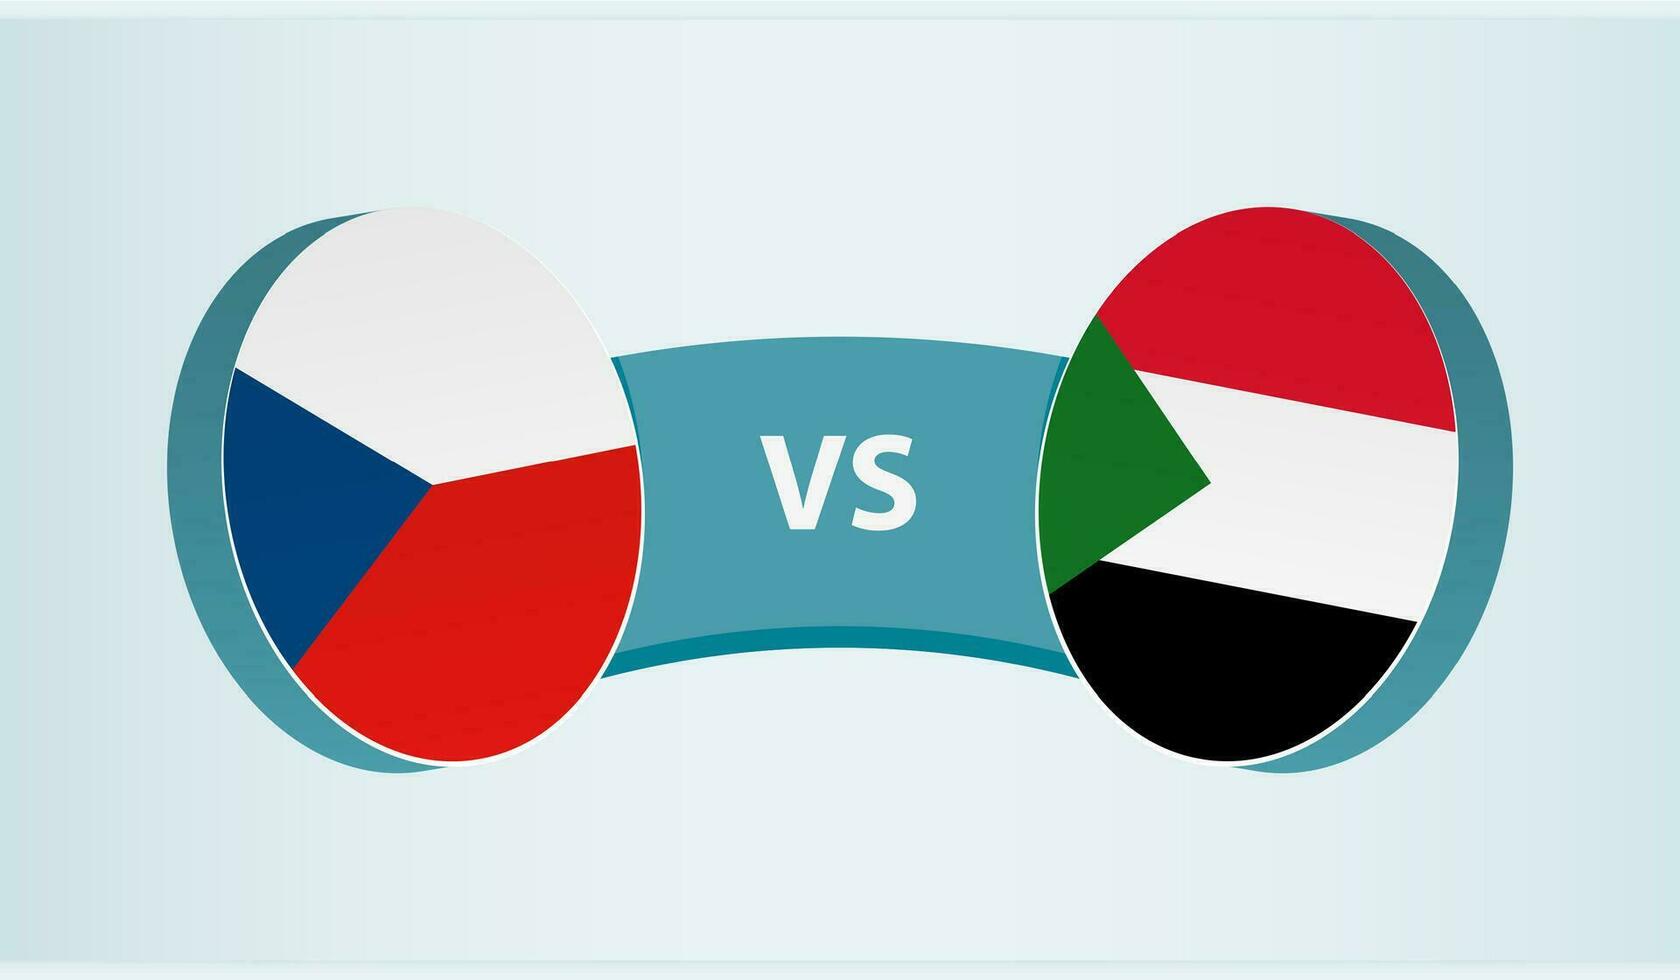 Czech Republic versus Sudan, team sports competition concept. vector